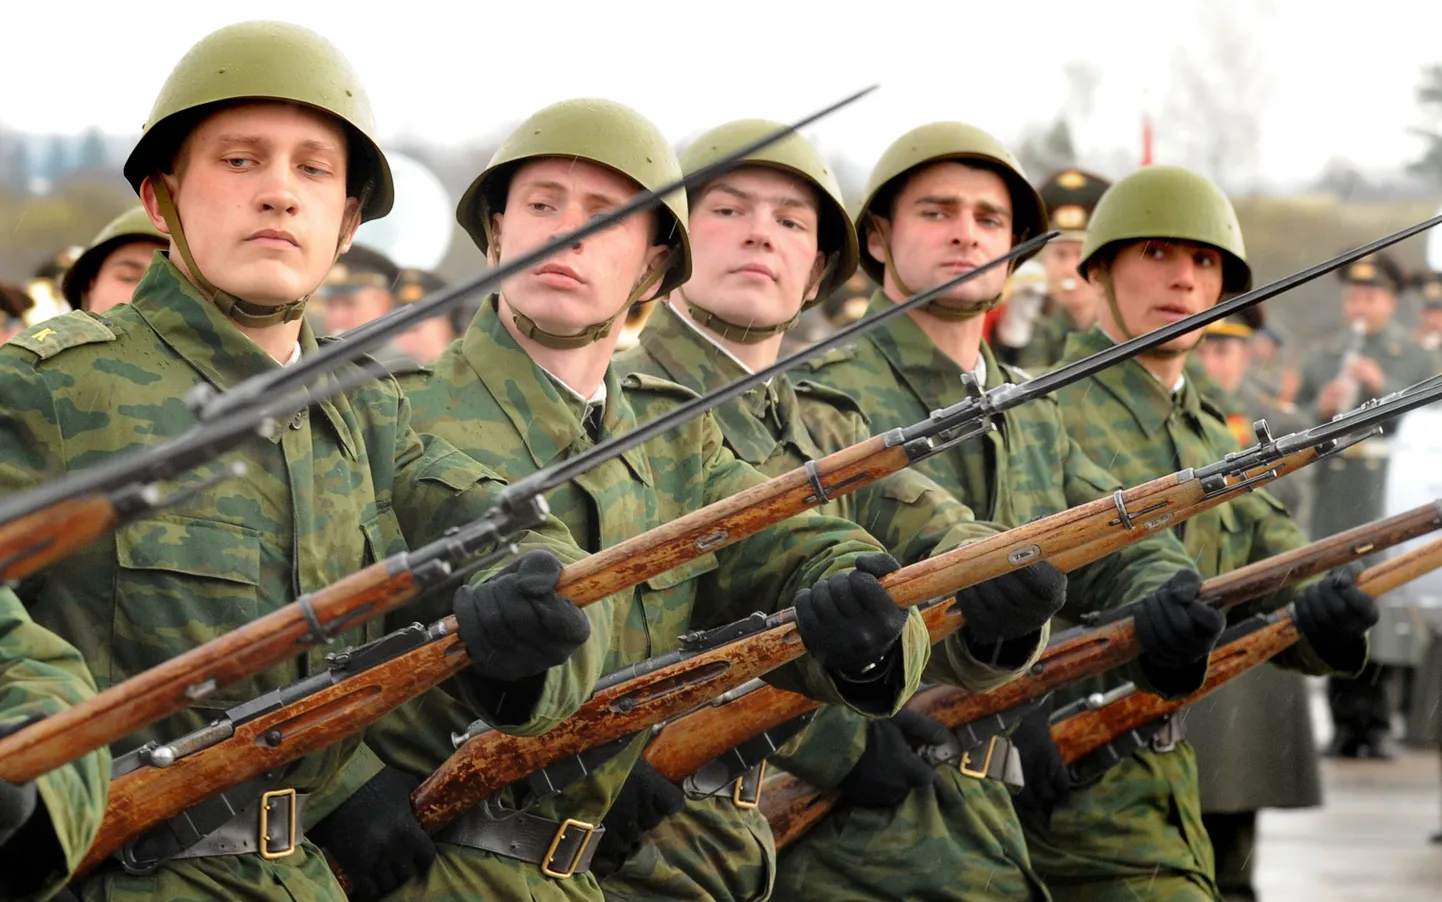 Vene sõjaväelased valmistumas 9. mai pidustusteks.